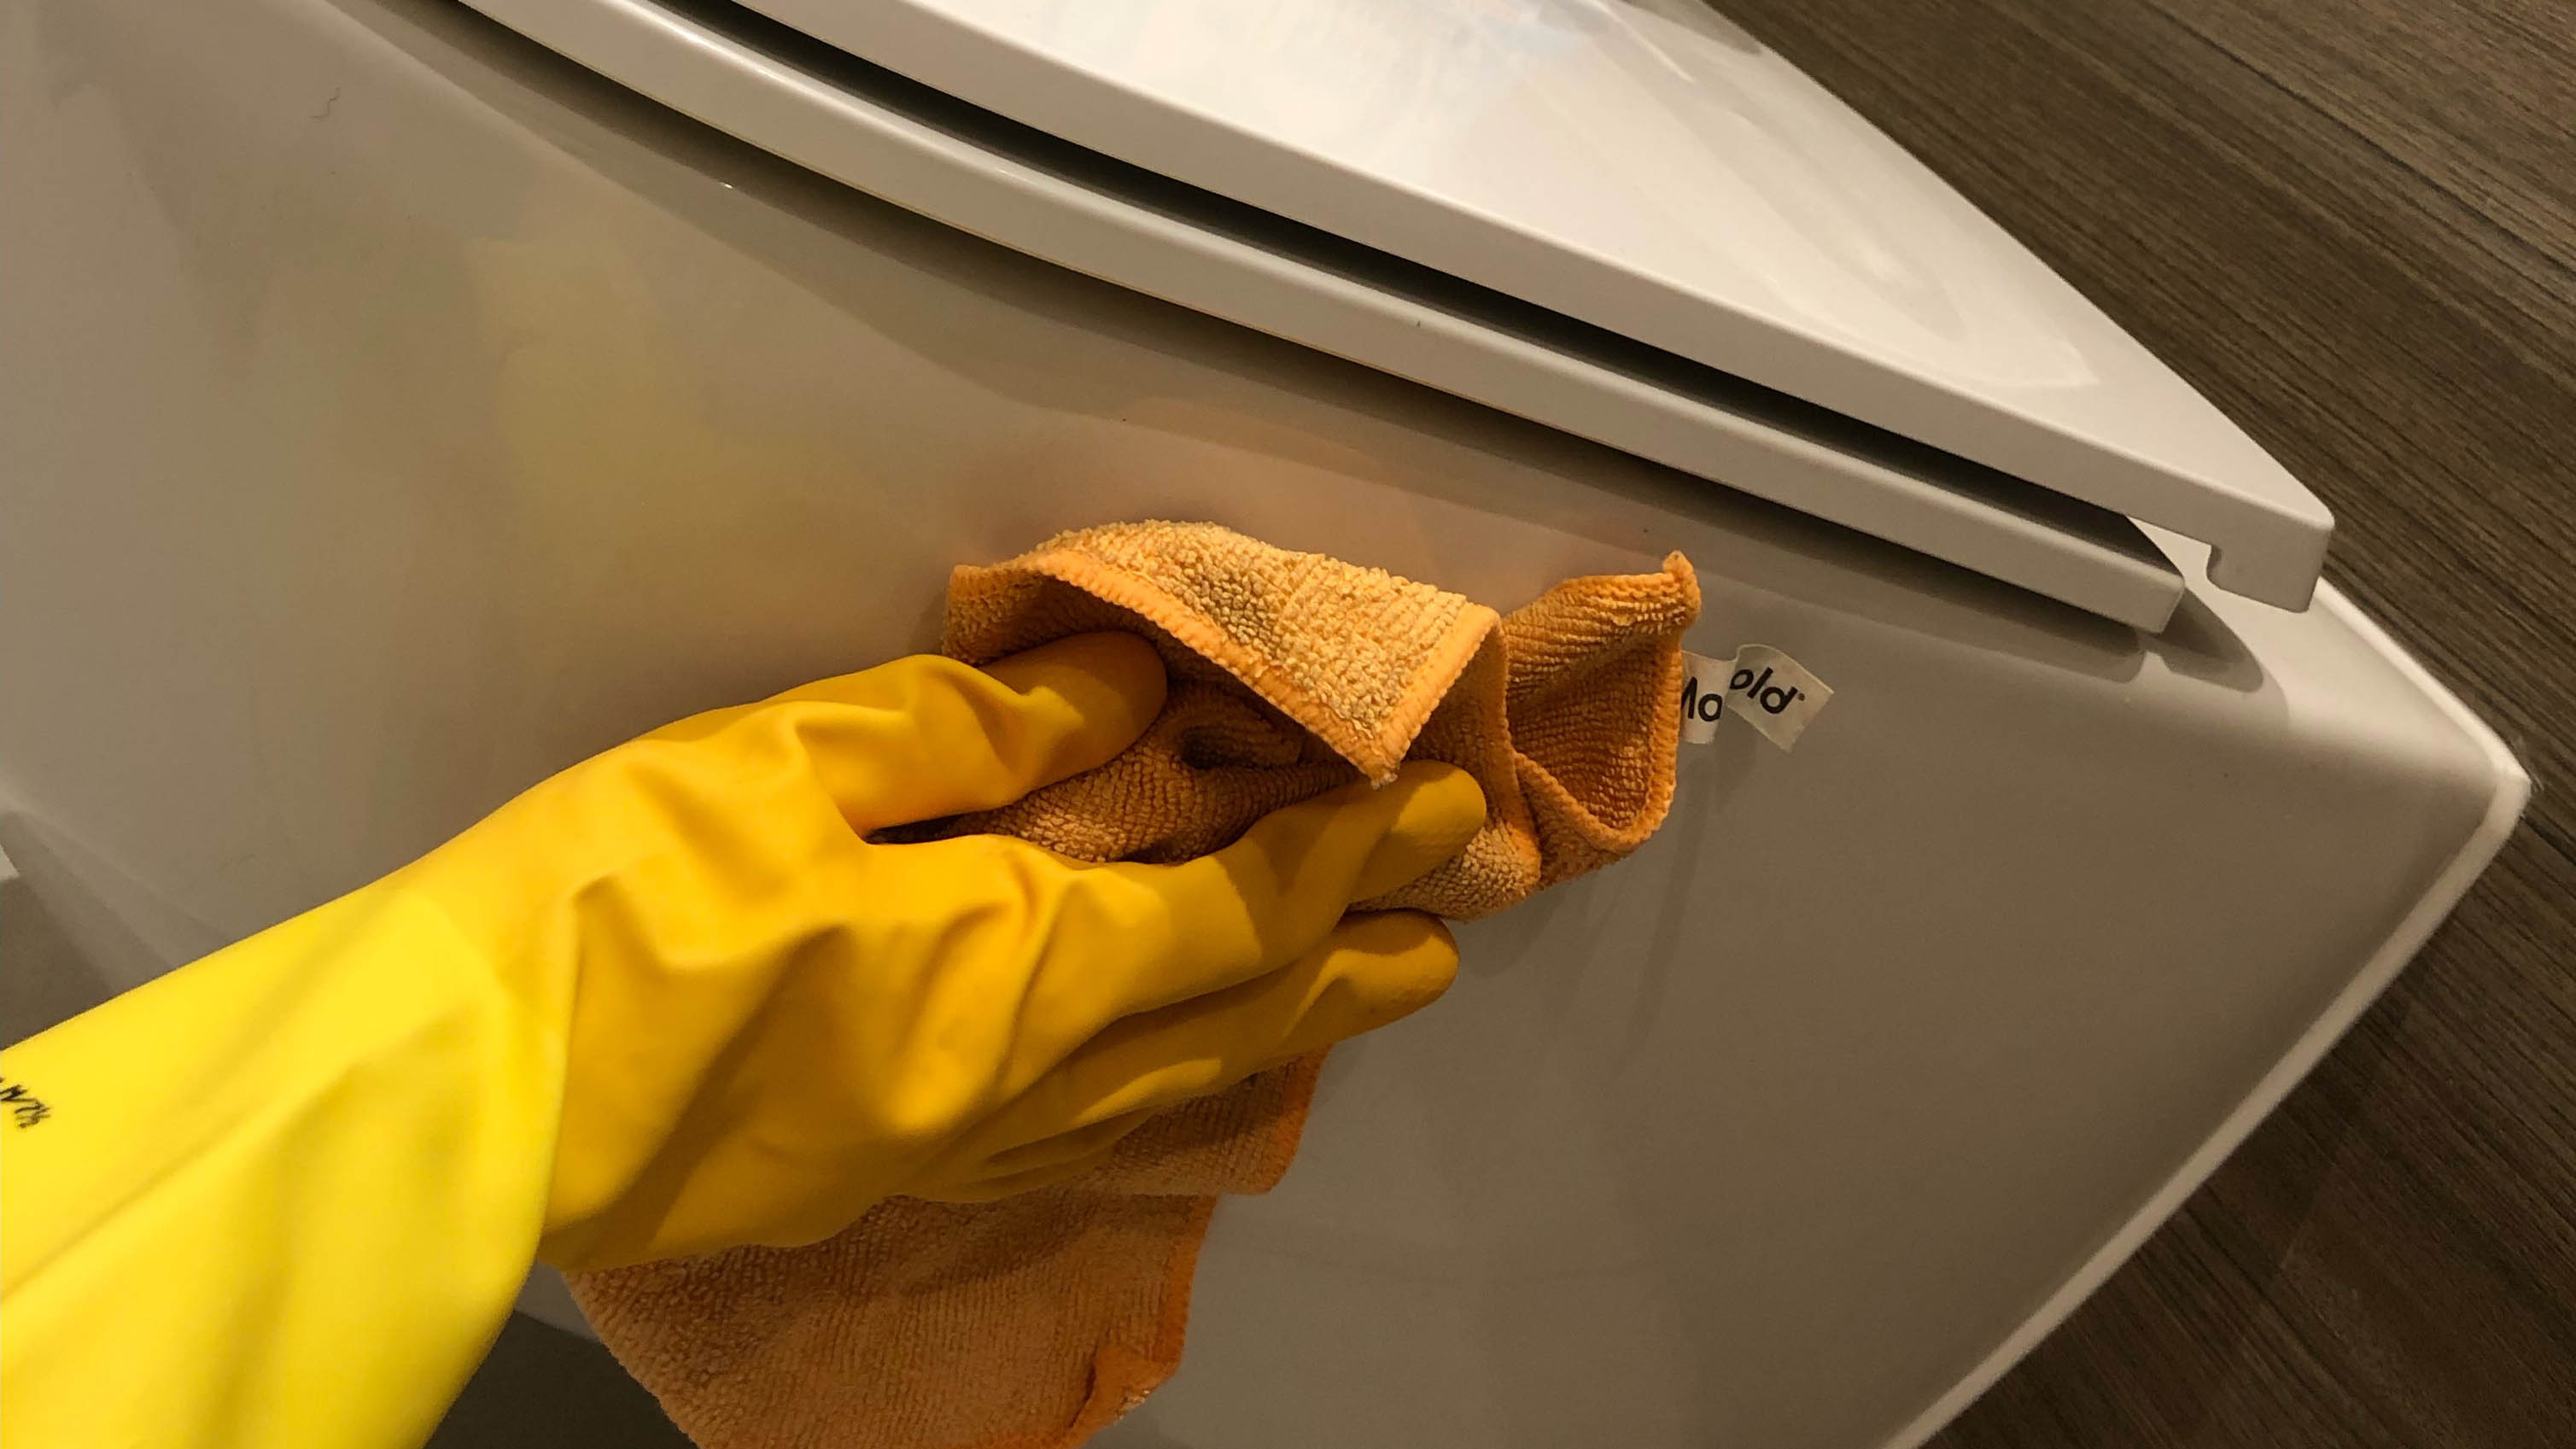 Lastik eldiven giyerken tuvaletin kenarını temizlemek için kullanılan mikrofiber bez